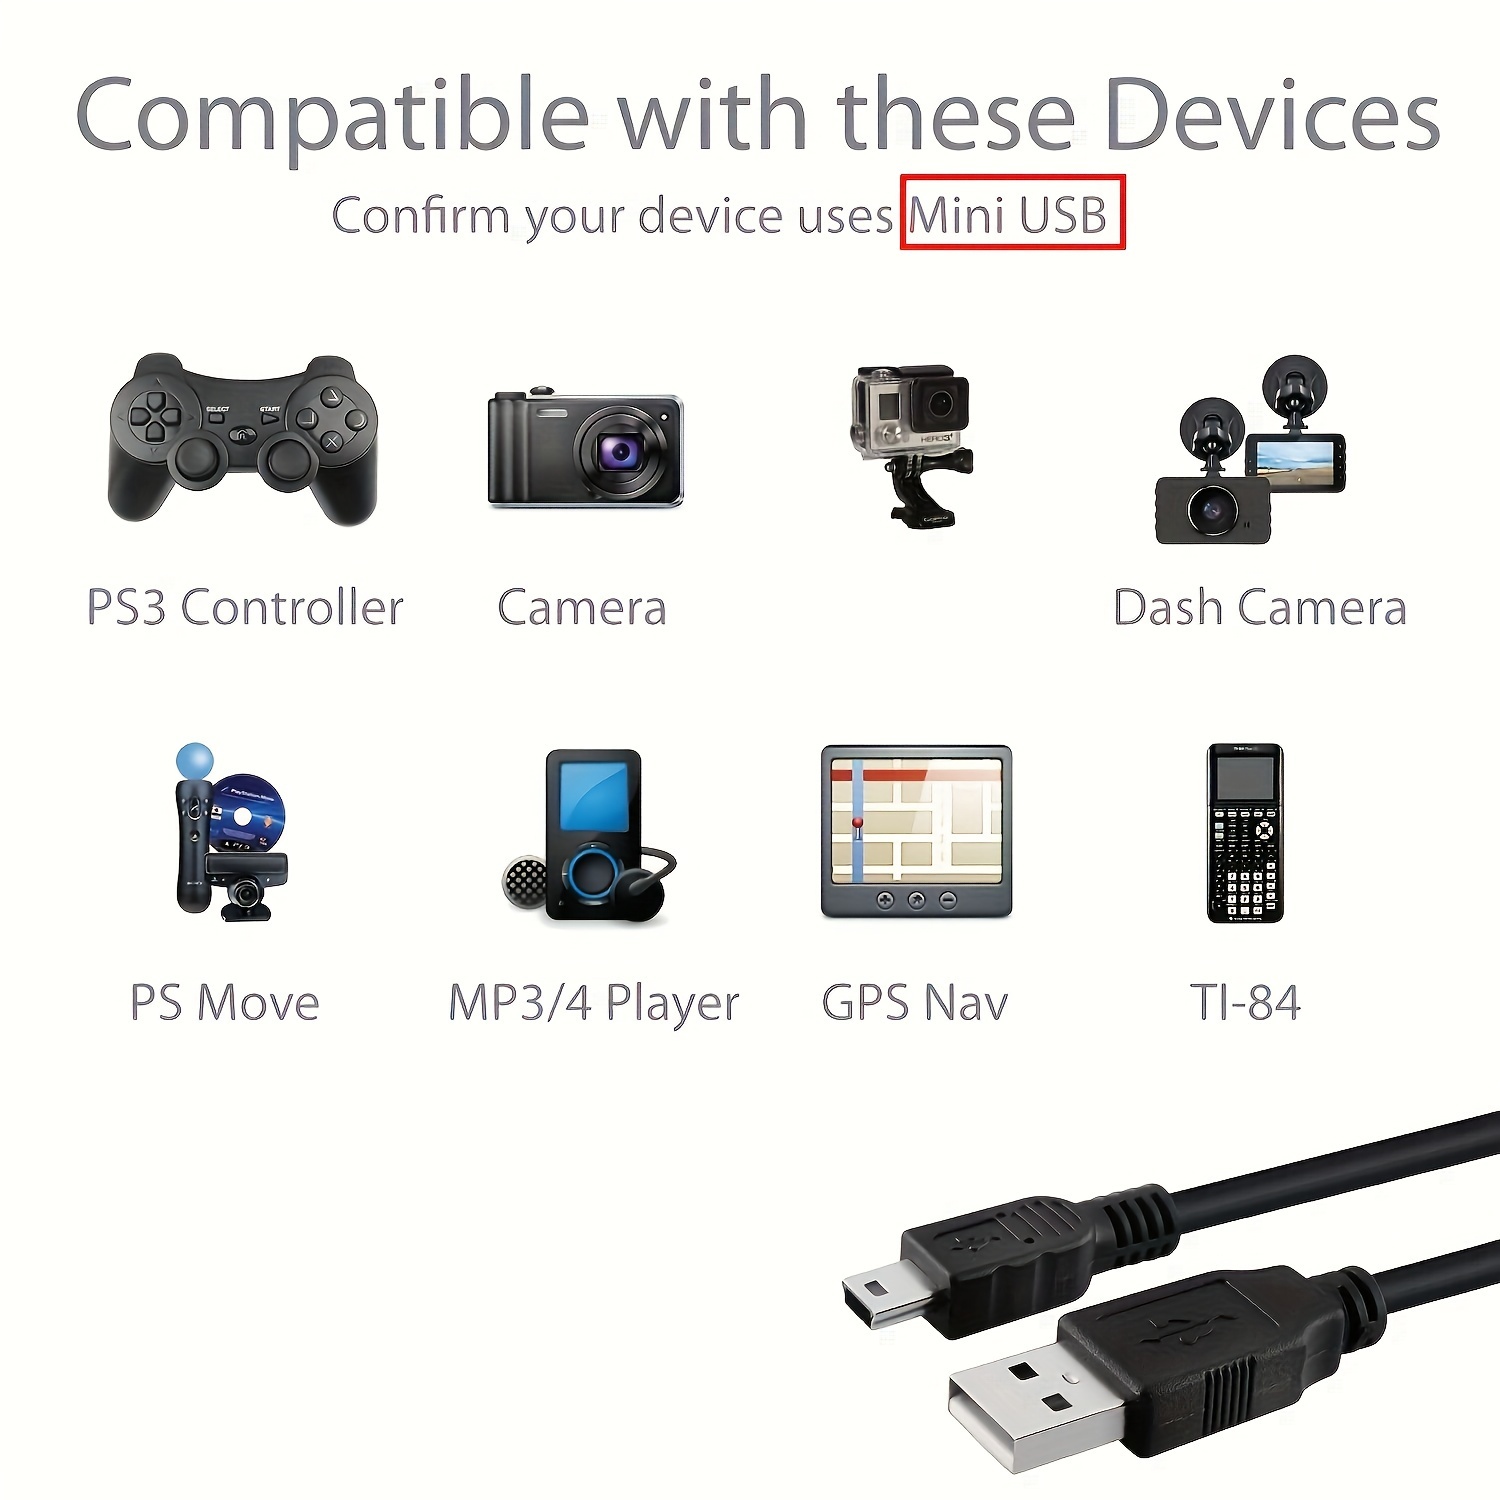 Lot de 2 câbles de chargement pour manette PS4 - 3 m - Câble de chargement  et de synchronisation de données pour manette Sony Playstation 4/PS4